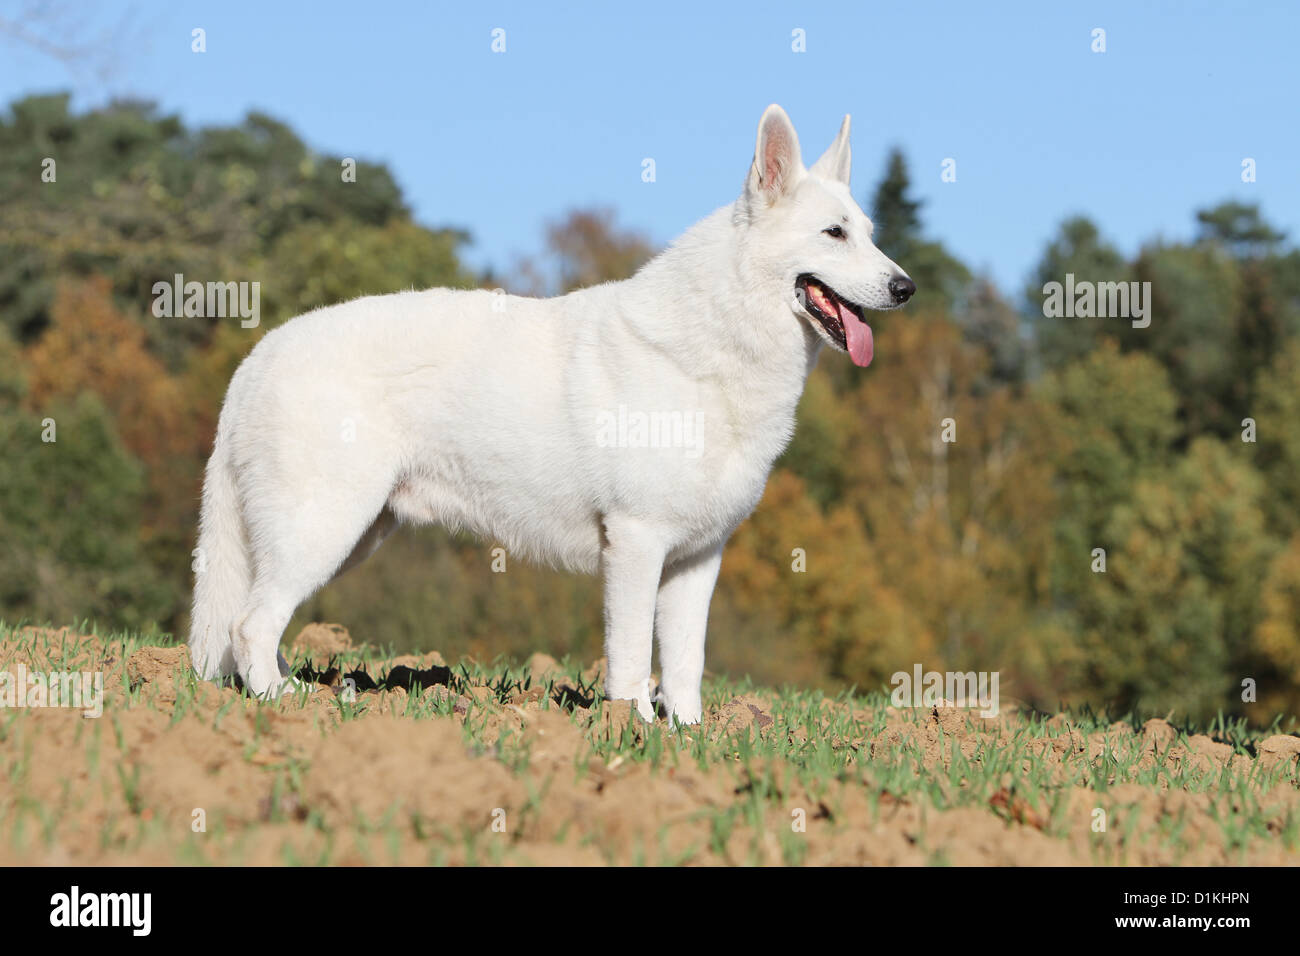 Weiße Schweizer Schäferhund / Hund Berger Blanc Suisse standard Profil  Stockfotografie - Alamy